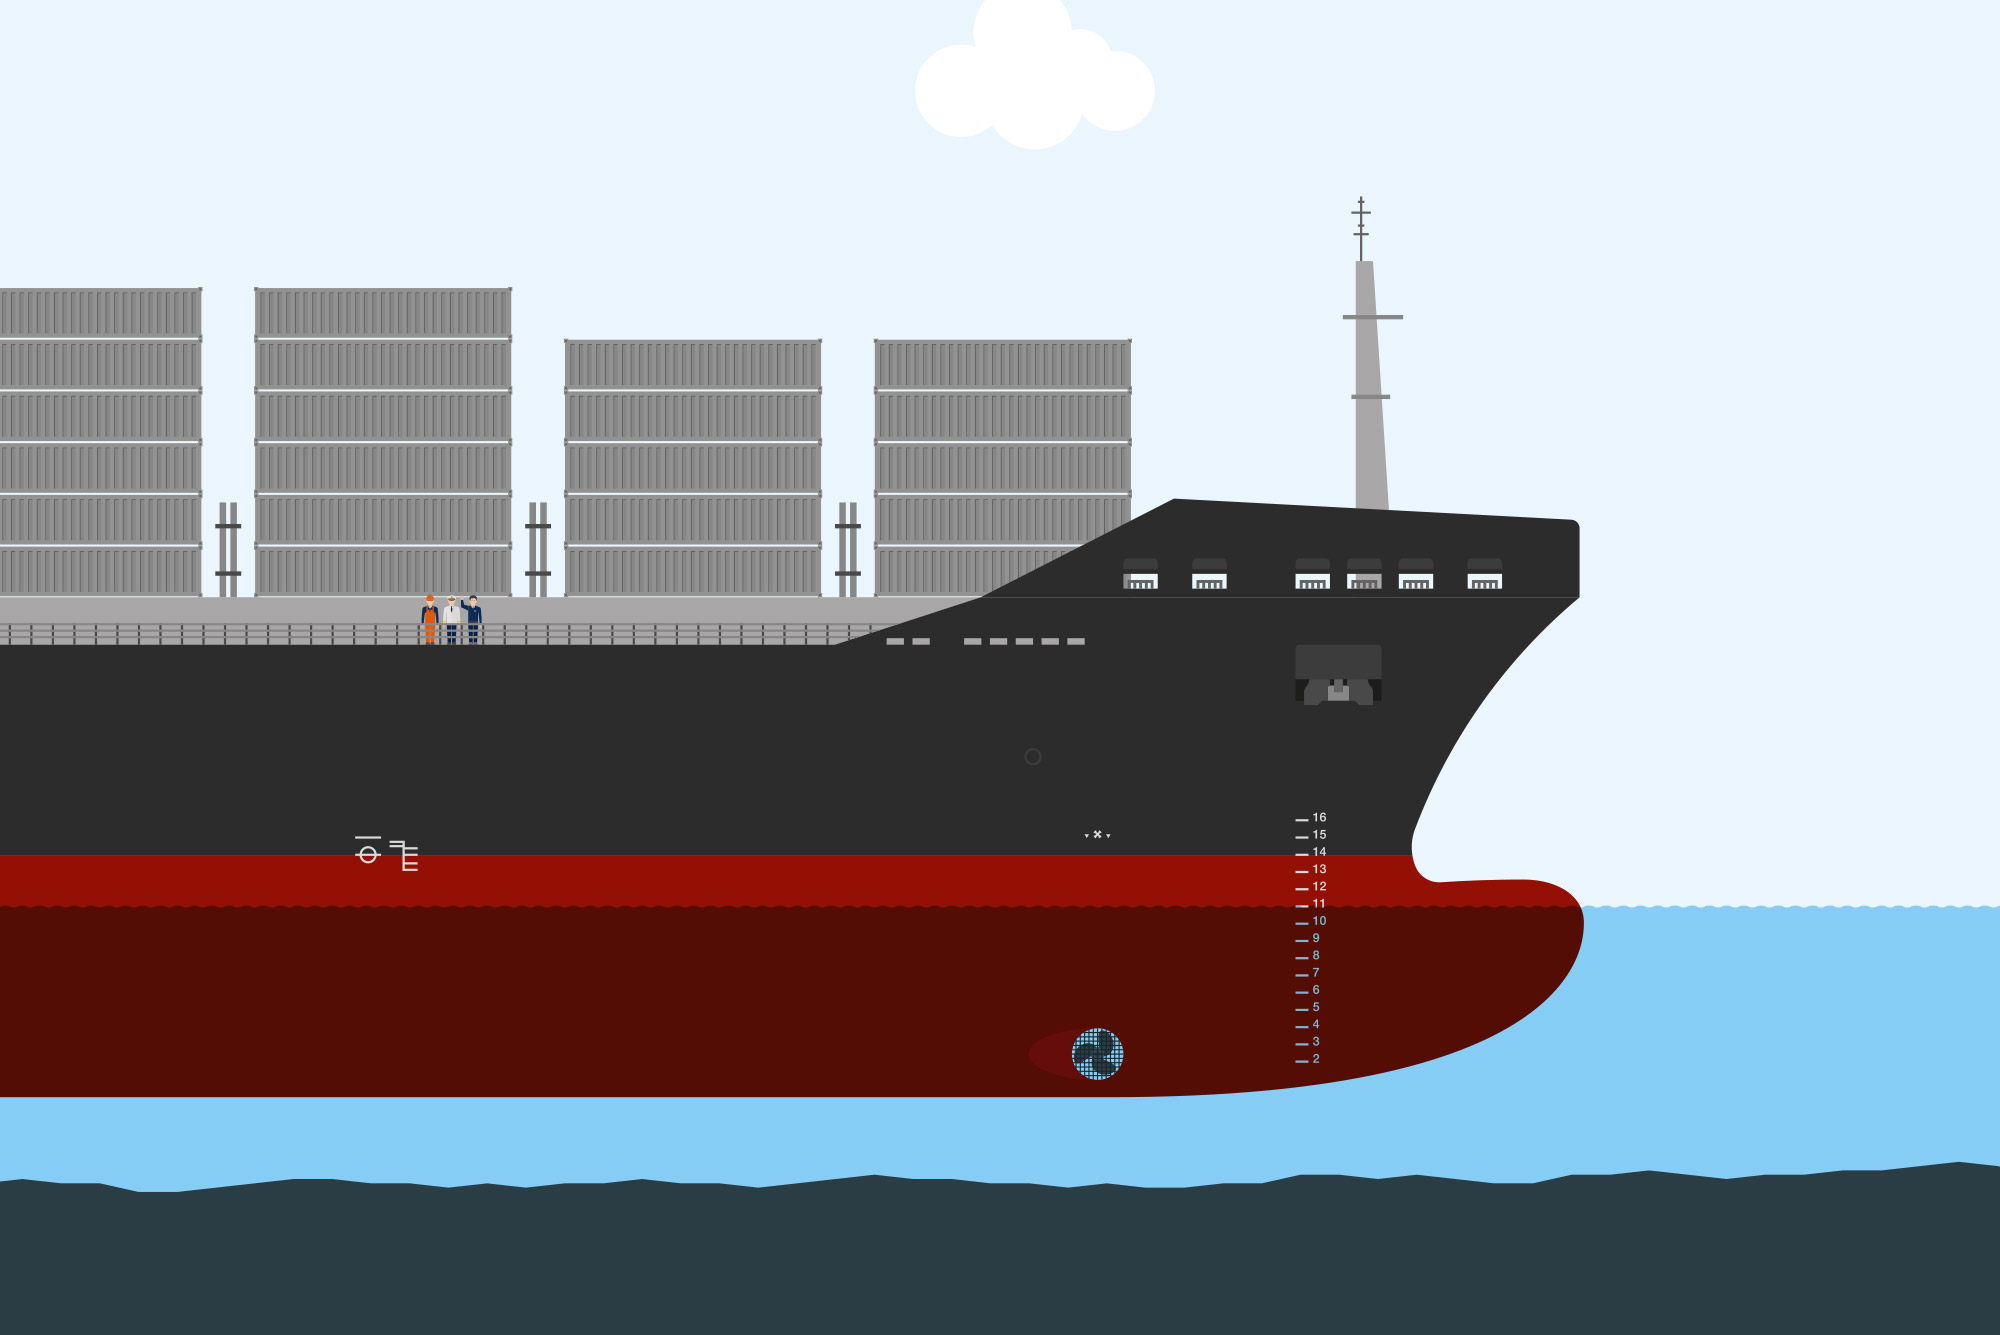 Bildausschnitt aus dem Animationsfilm für die Hamburg Port Authority HPA.